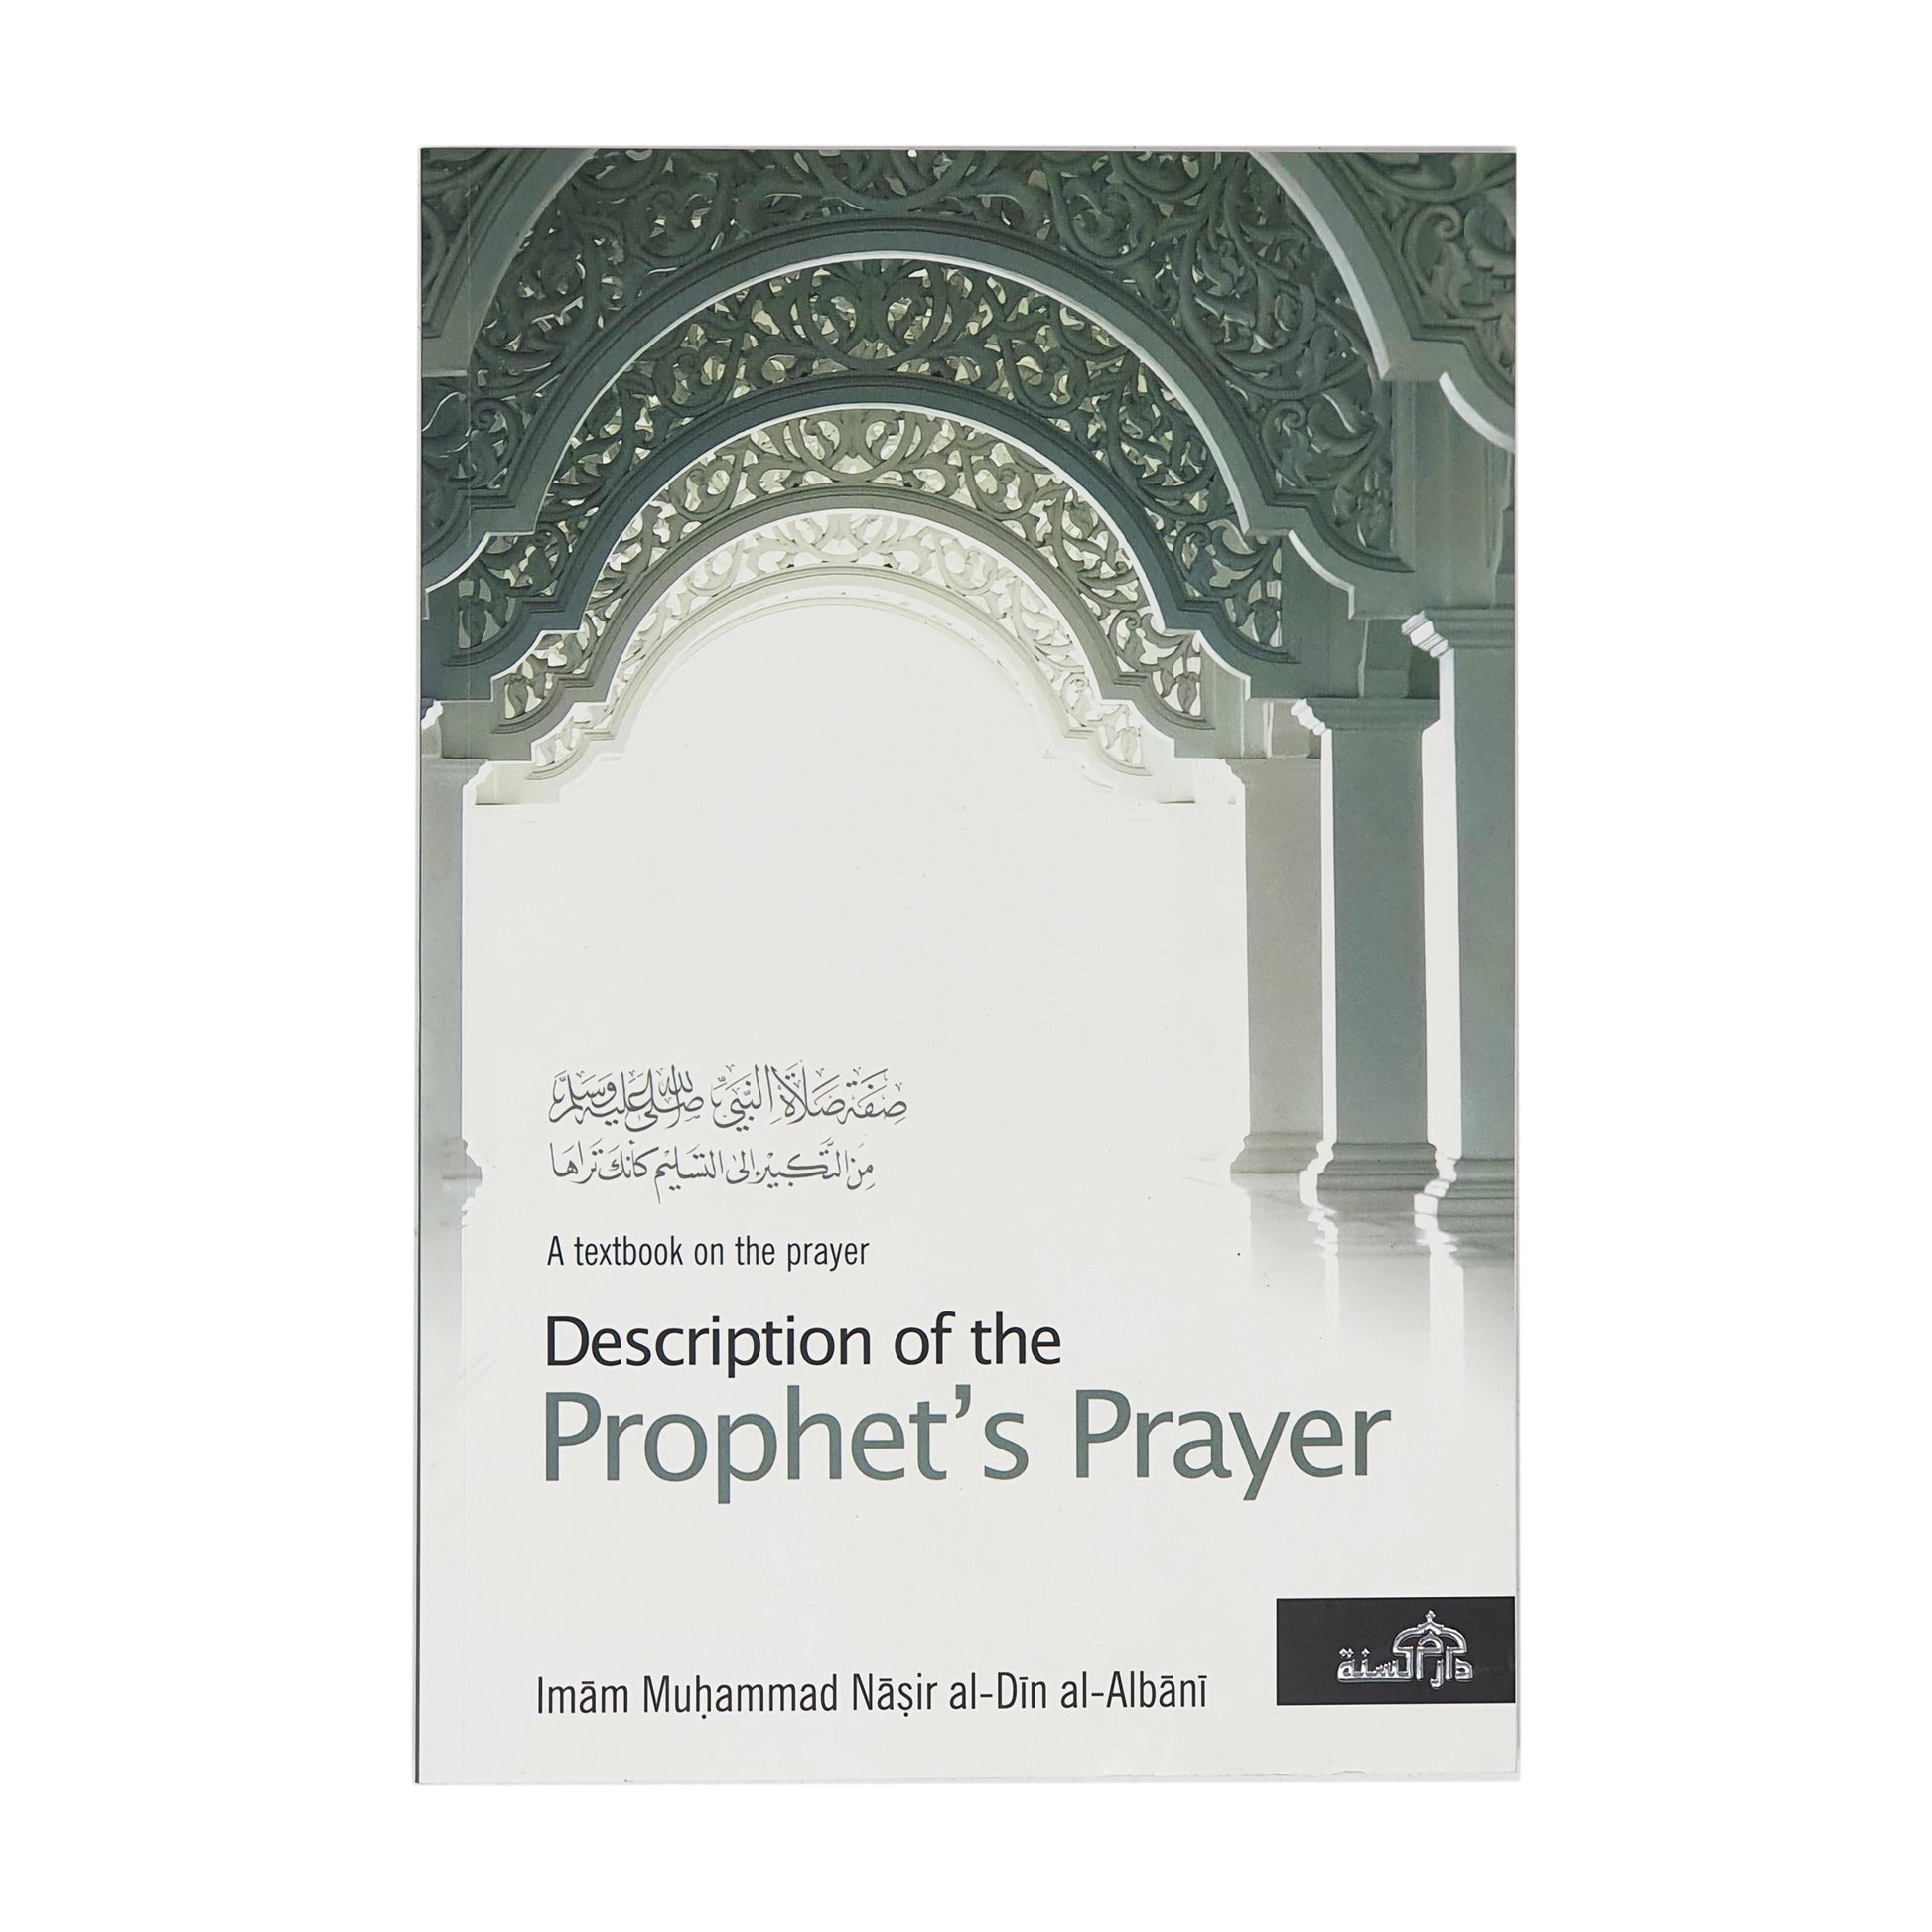 Description of the Prophets Prayer